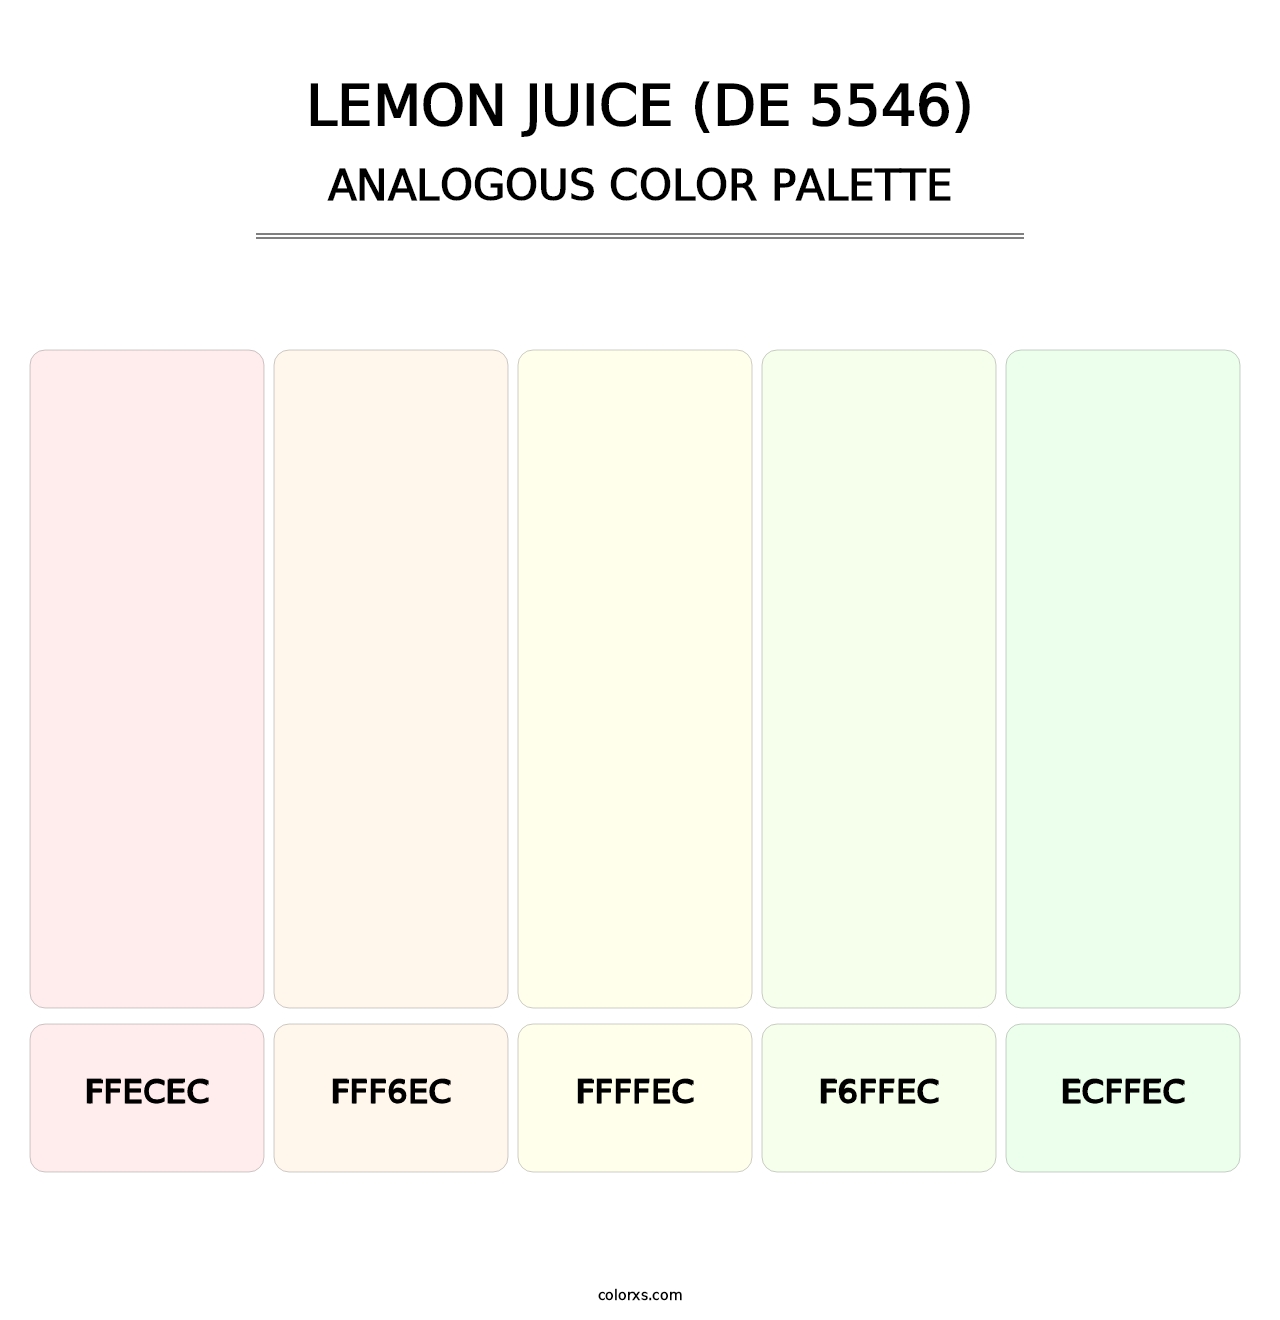 Lemon Juice (DE 5546) - Analogous Color Palette